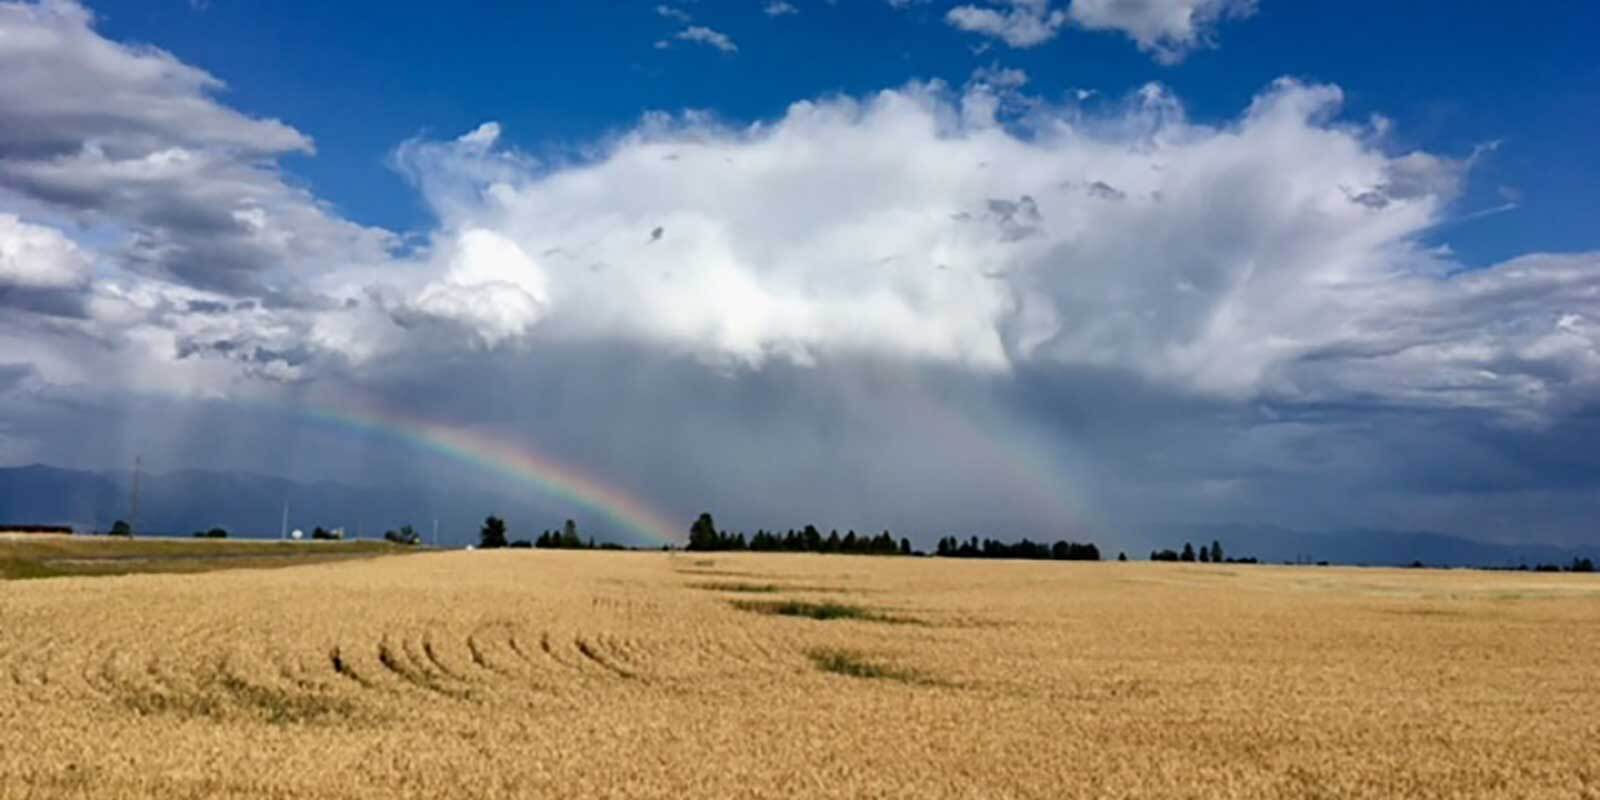 Rainbow over grain field with sky